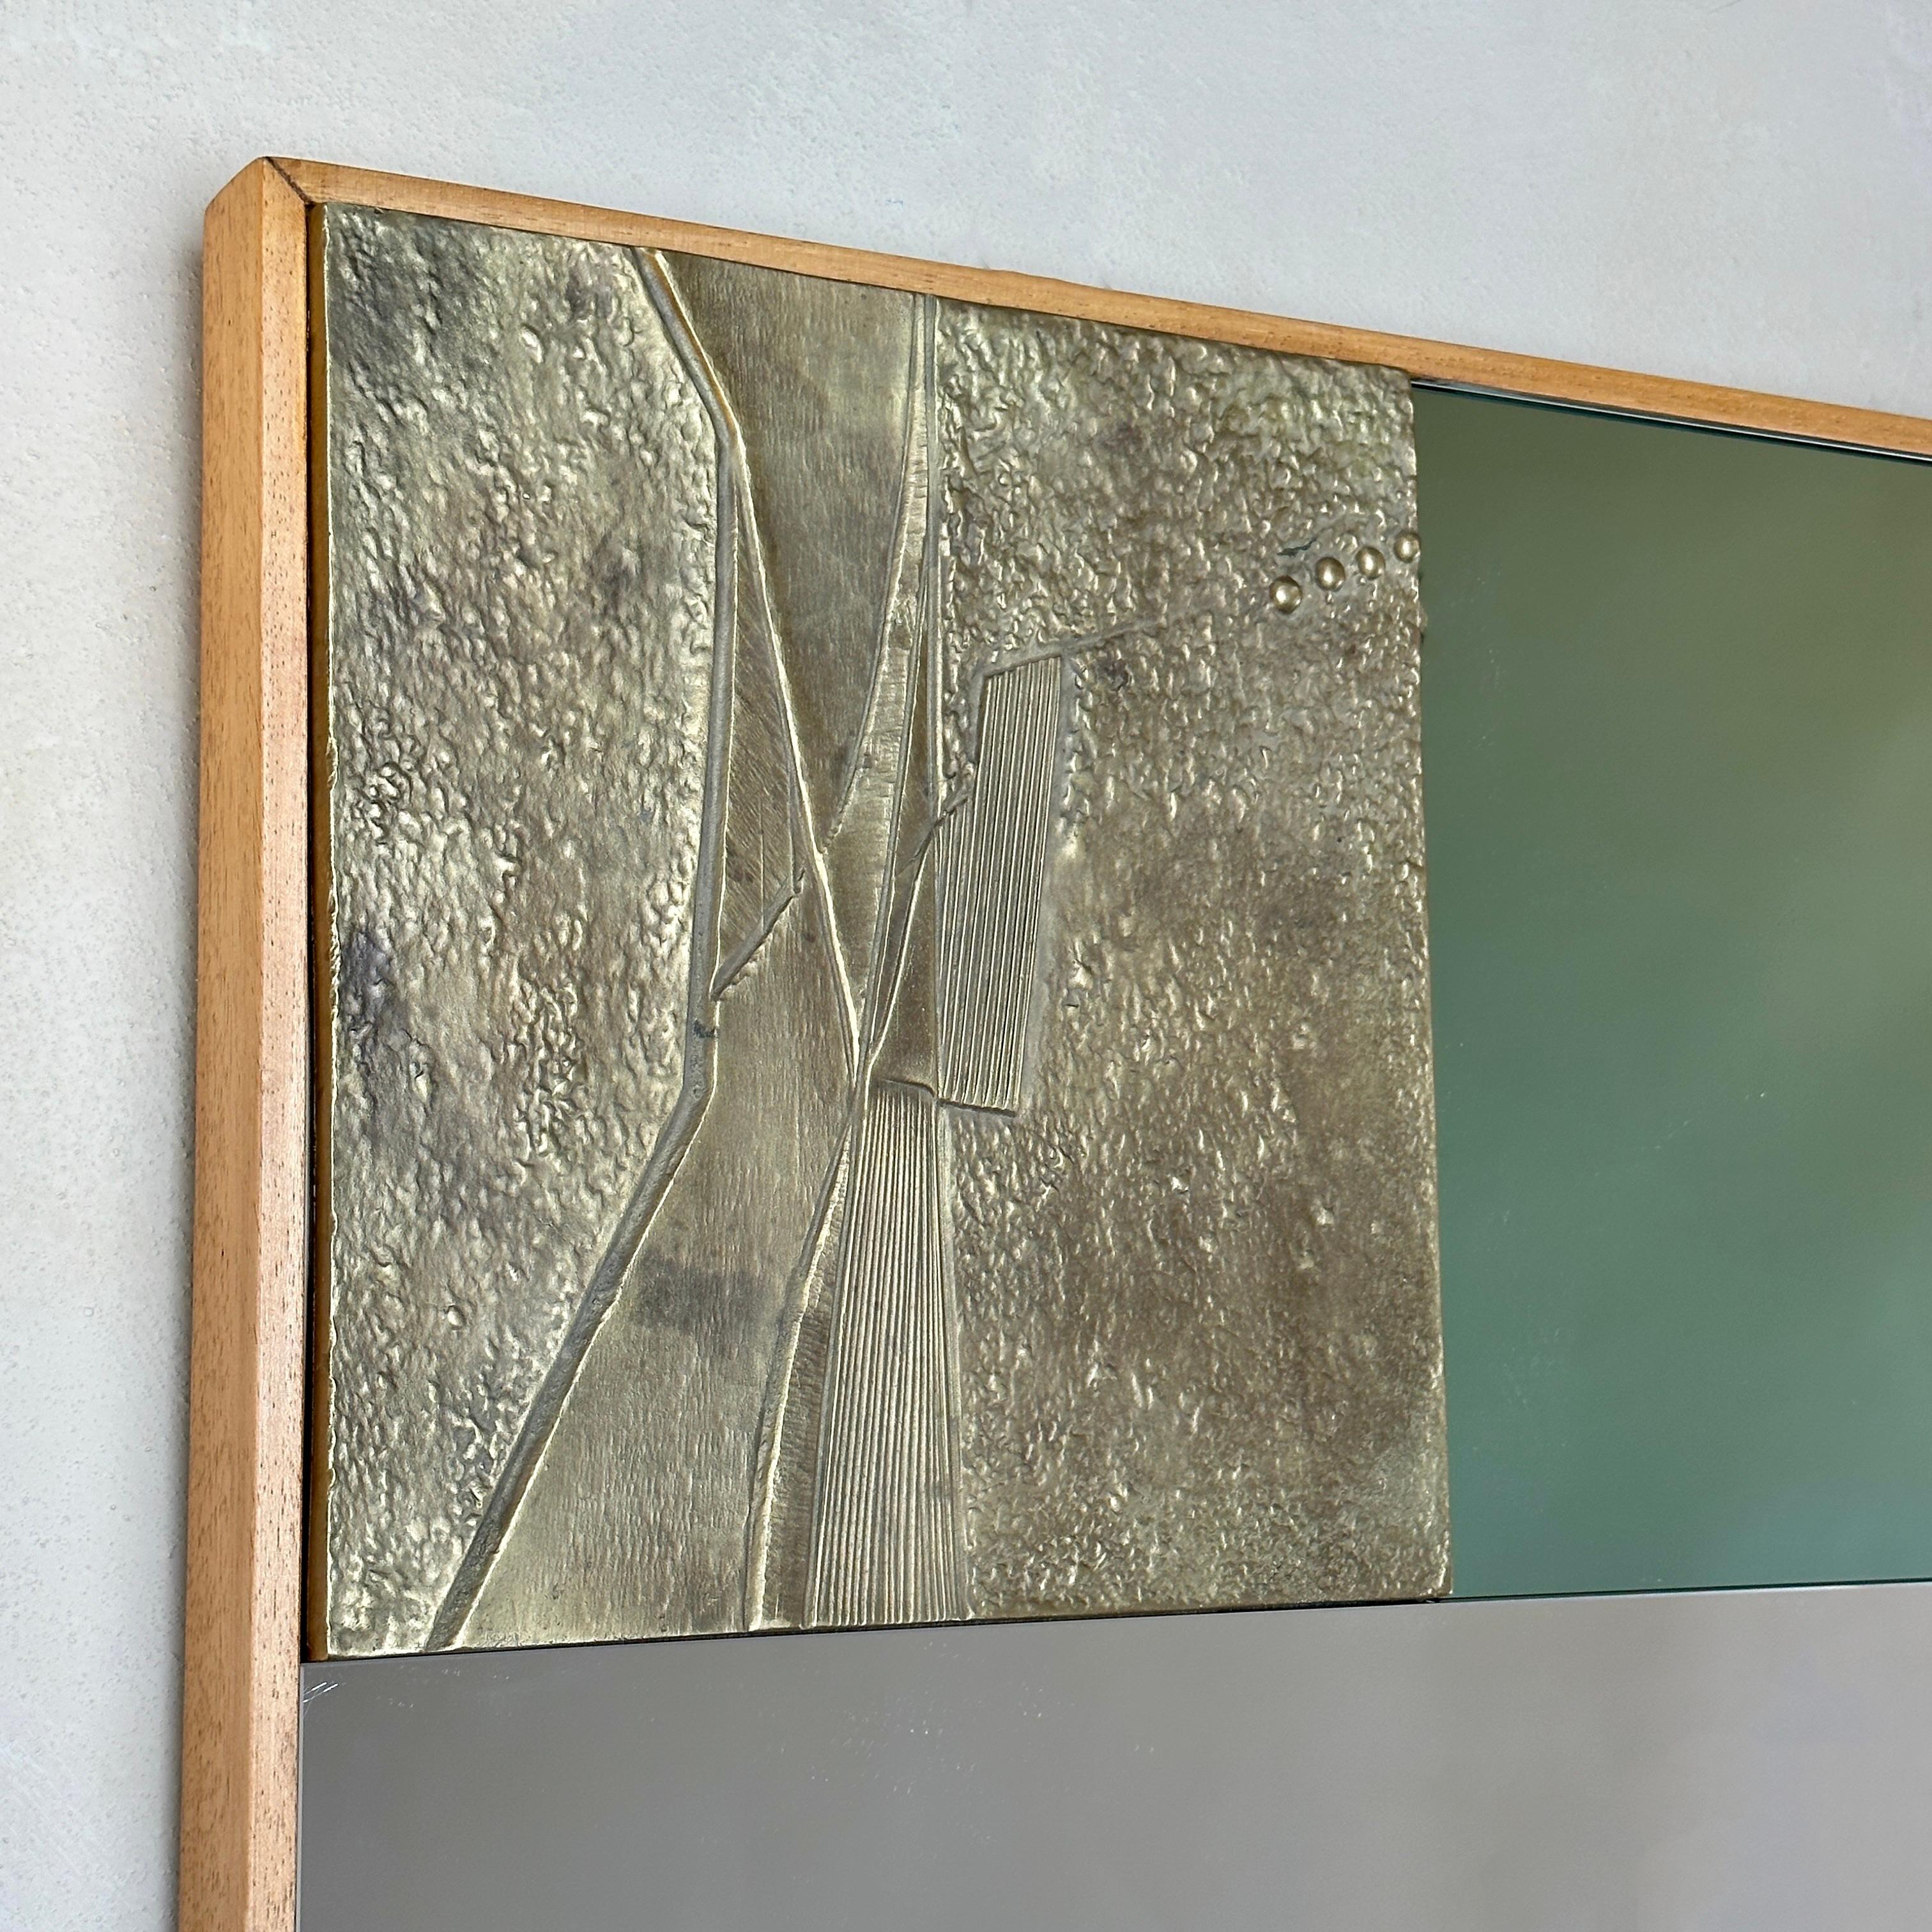 Superbe miroir bicolore avec plaques sculpturales en bronze aux motifs abstraits et cadre en bois de hêtre. Il est censé être suspendu uniquement de manière horizontale.